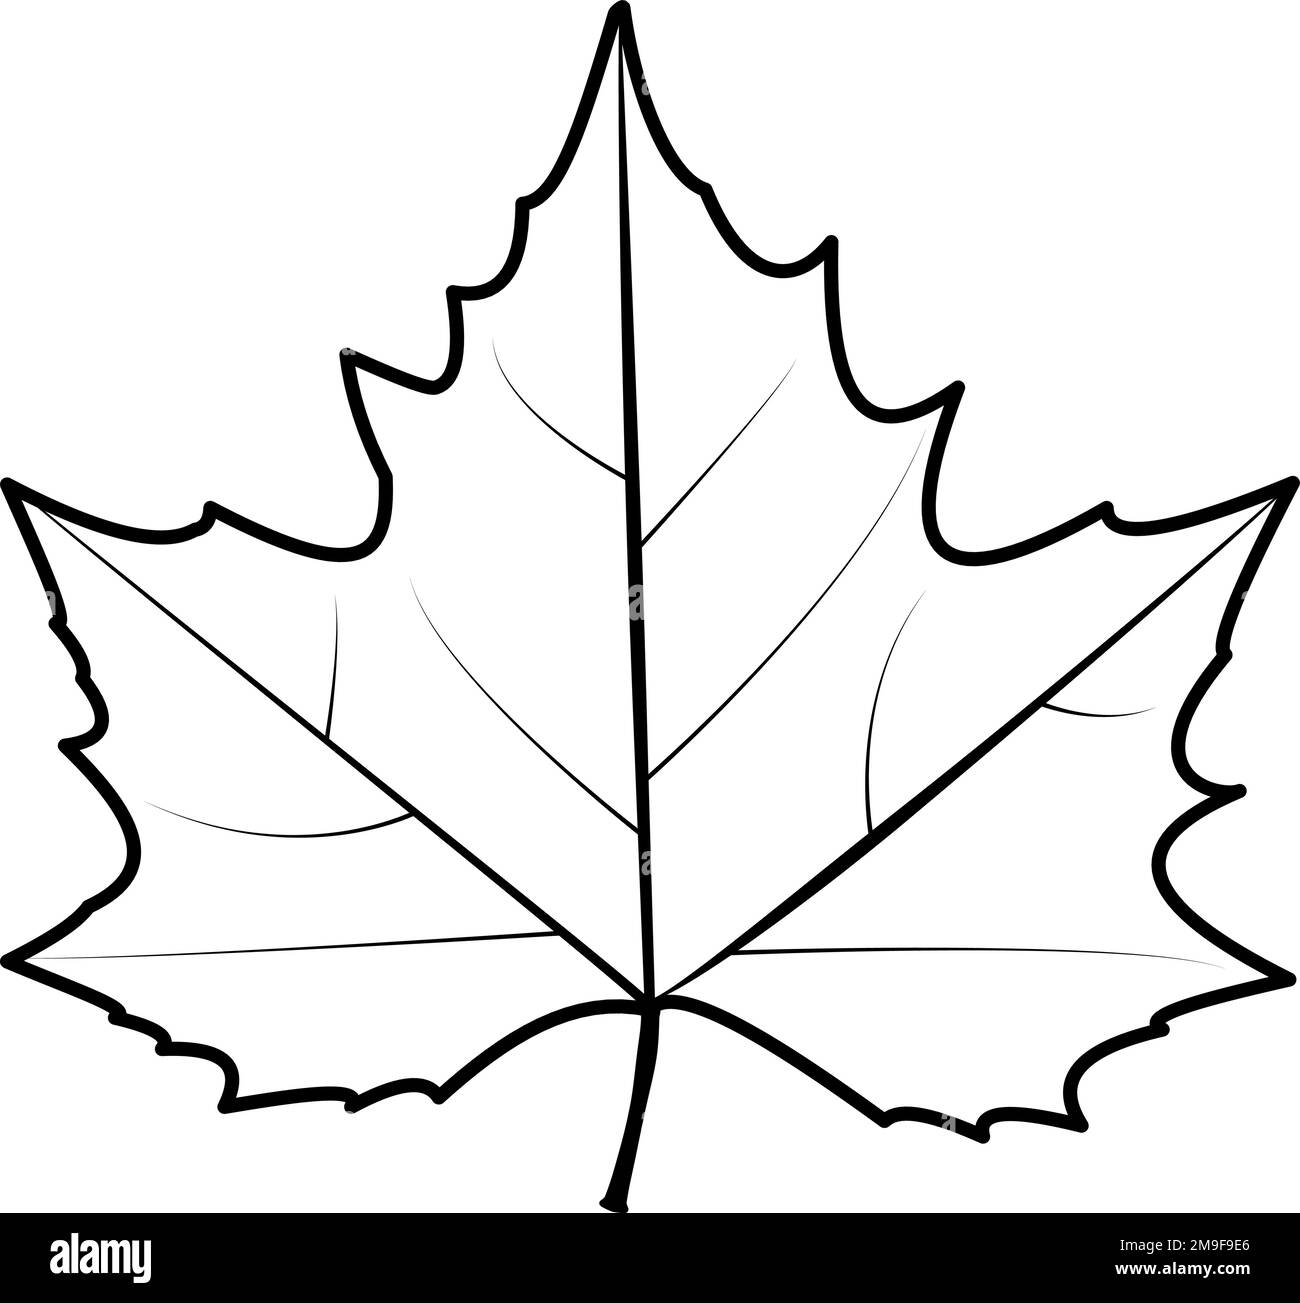 Leaf Line Drawing Simple Leaf Vector Illustration Ilustraço Outline Sketch, Simple  Leaves Drawing, Simple Leaves Outline, Simple Leaves Sketch PNG and Vector  with Transparent Background for Free Download